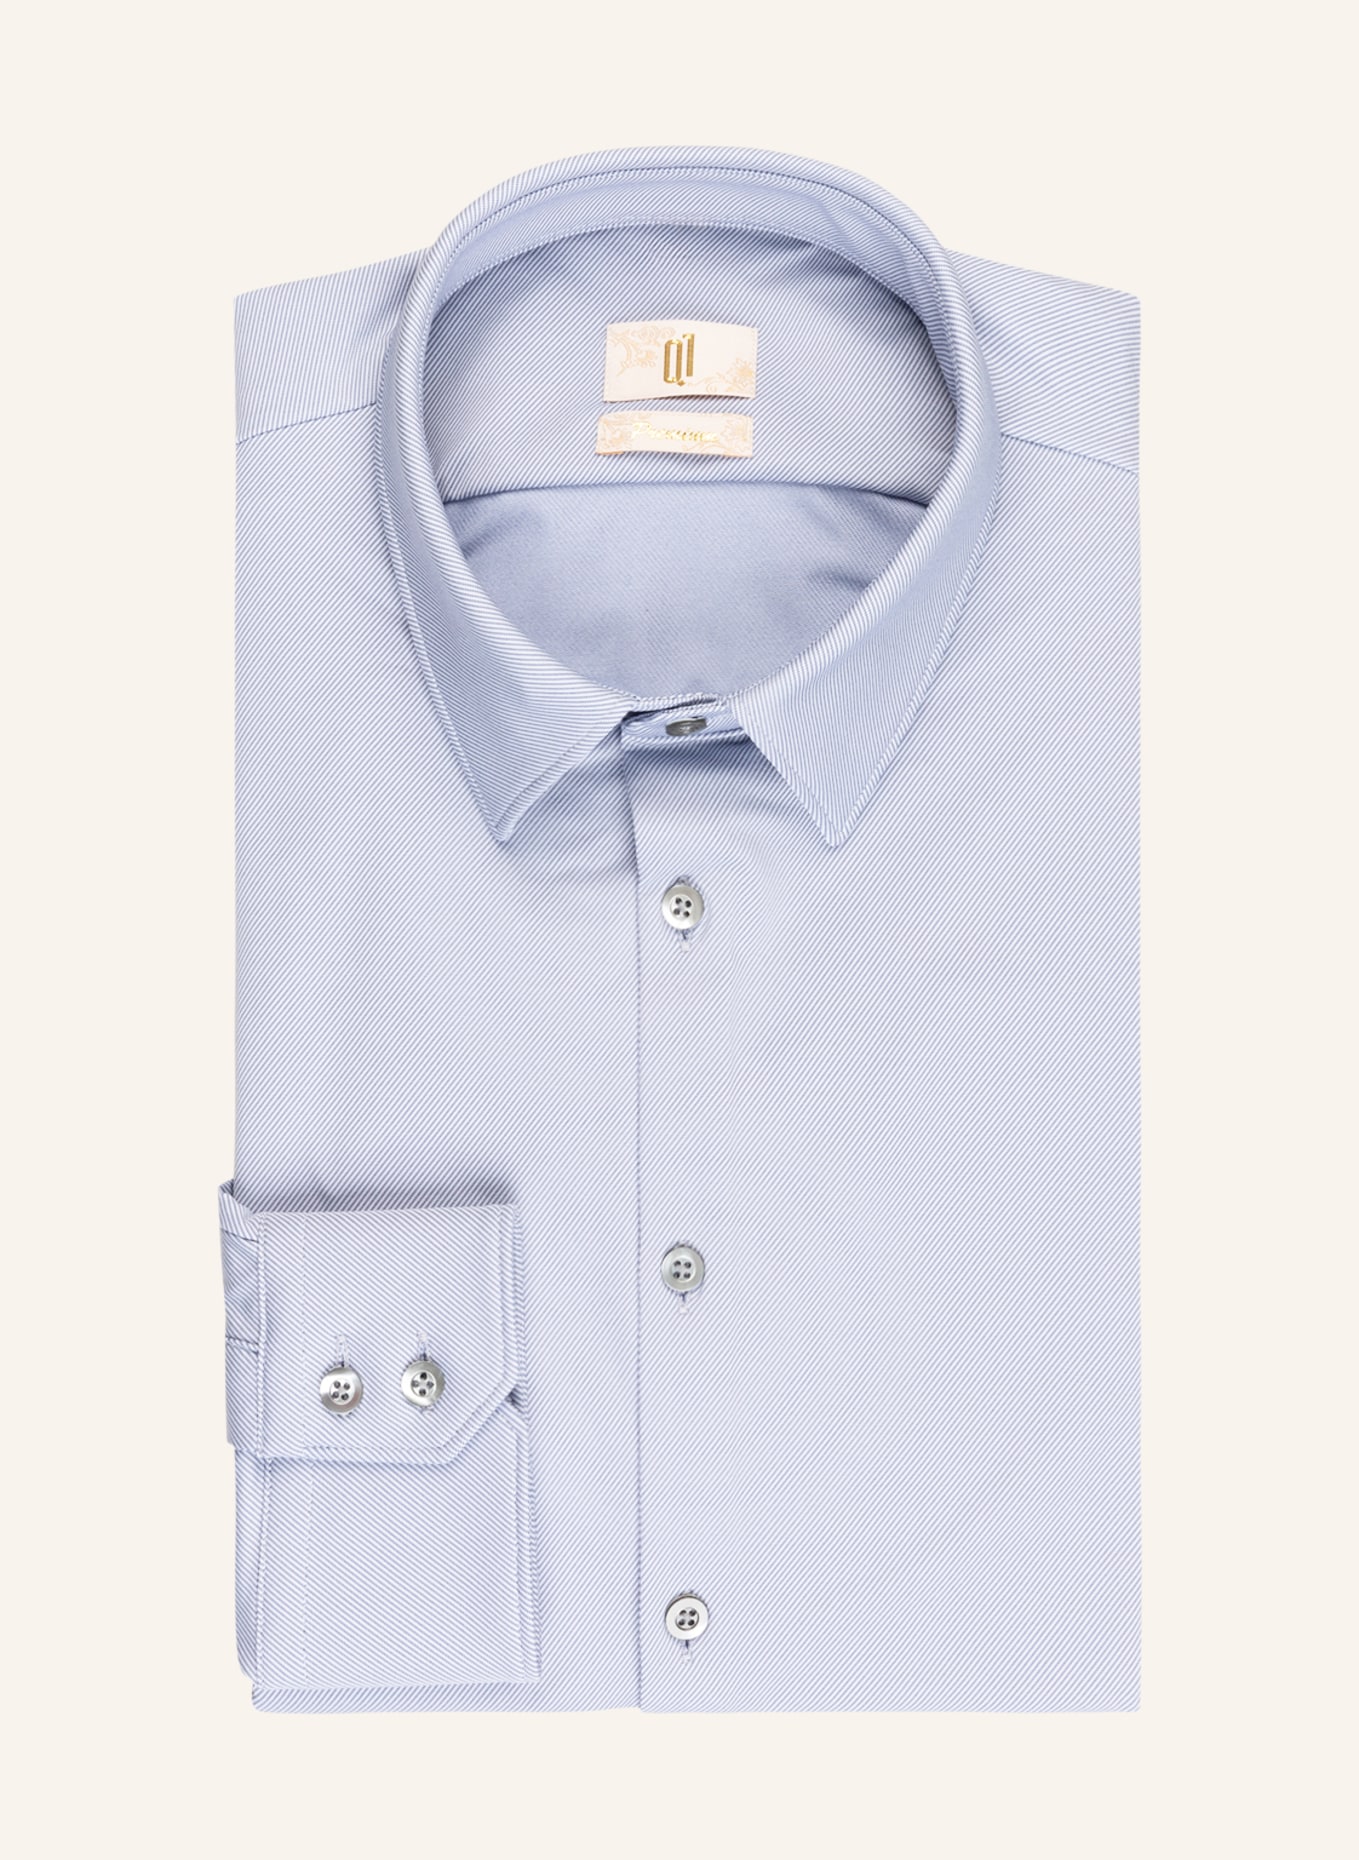 Q1 Manufaktur Shirt Extra slim fit , Color: LIGHT BLUE (Image 1)